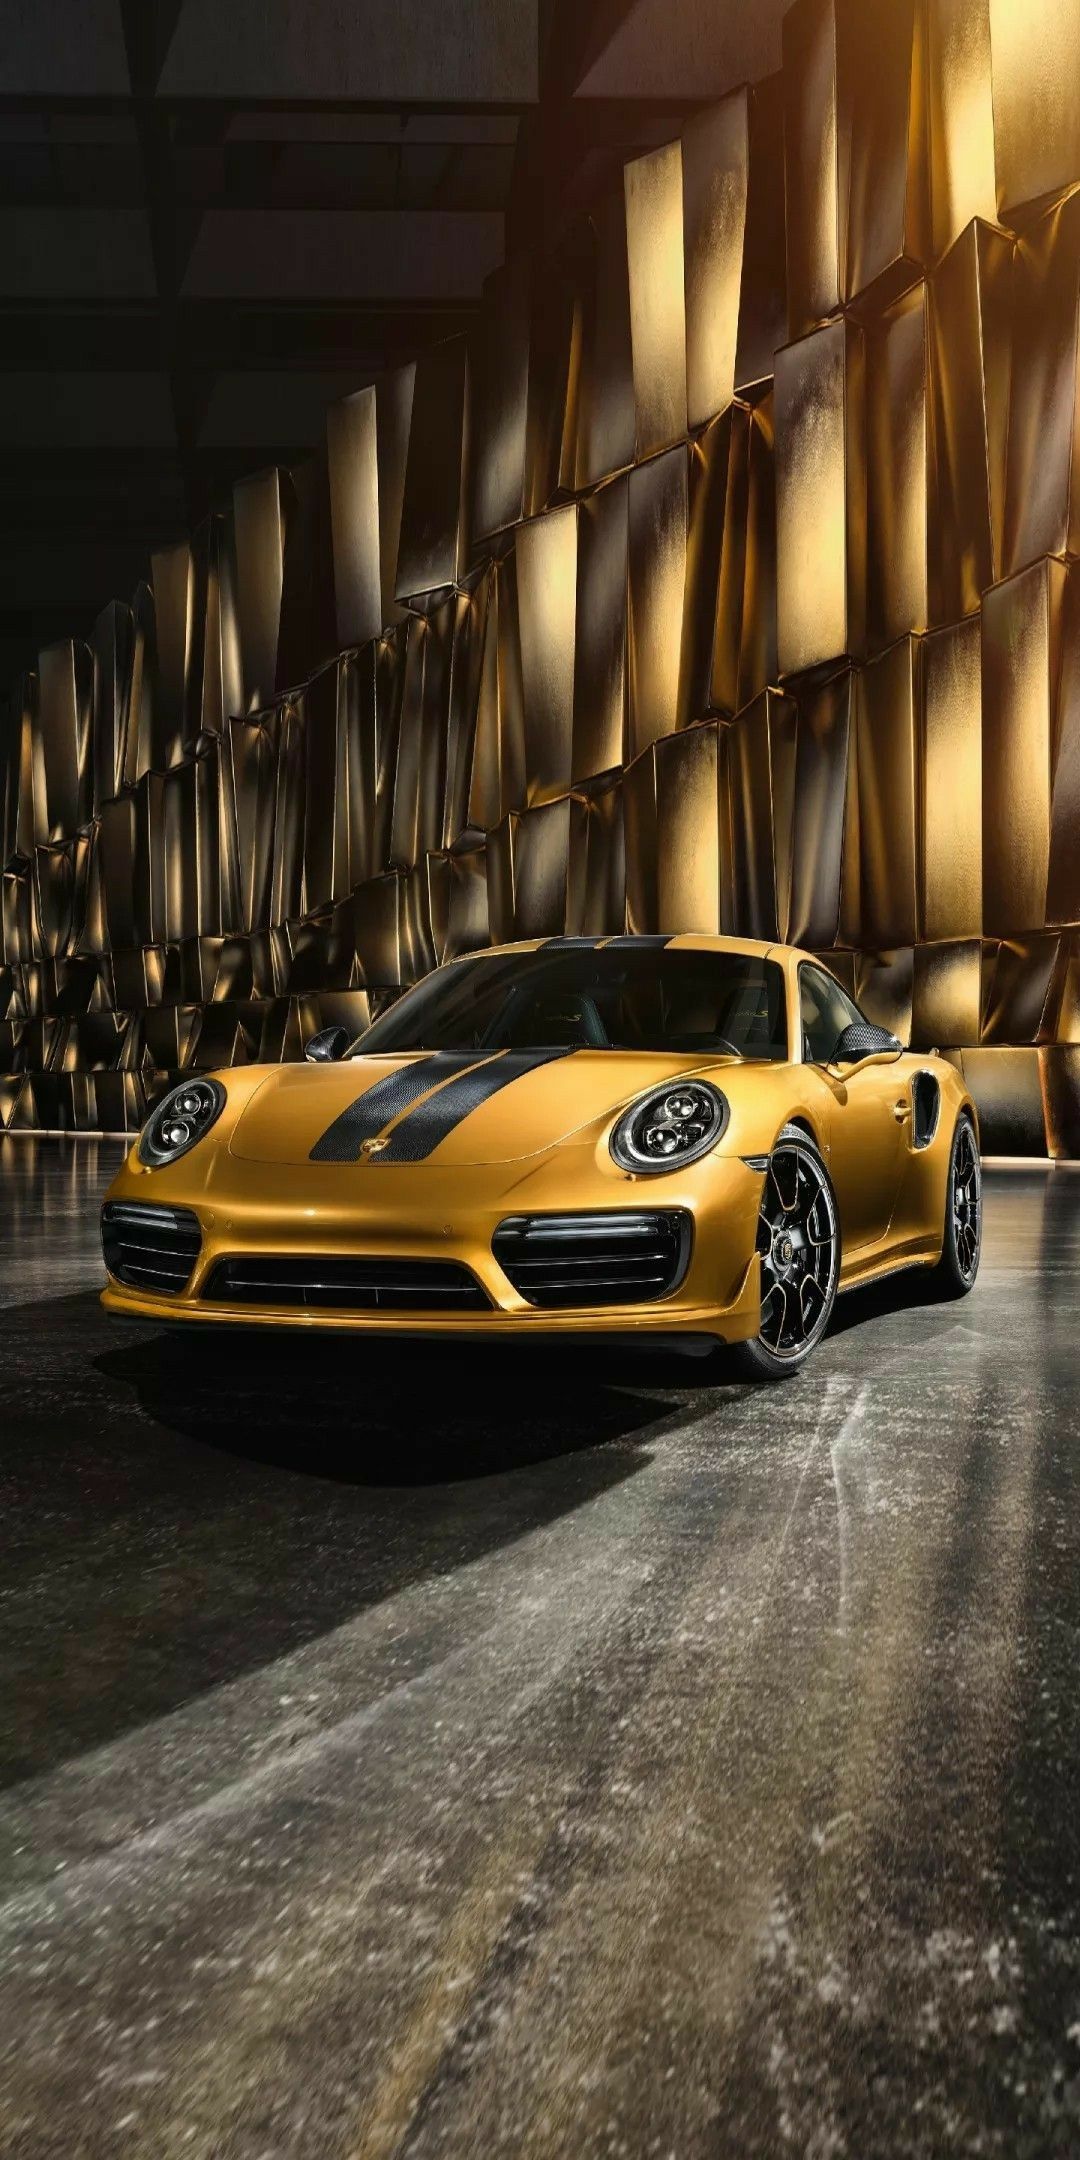 PORSCHE HD WALLPAPERS. Porsche cars, Car wallpaper, Super luxury cars